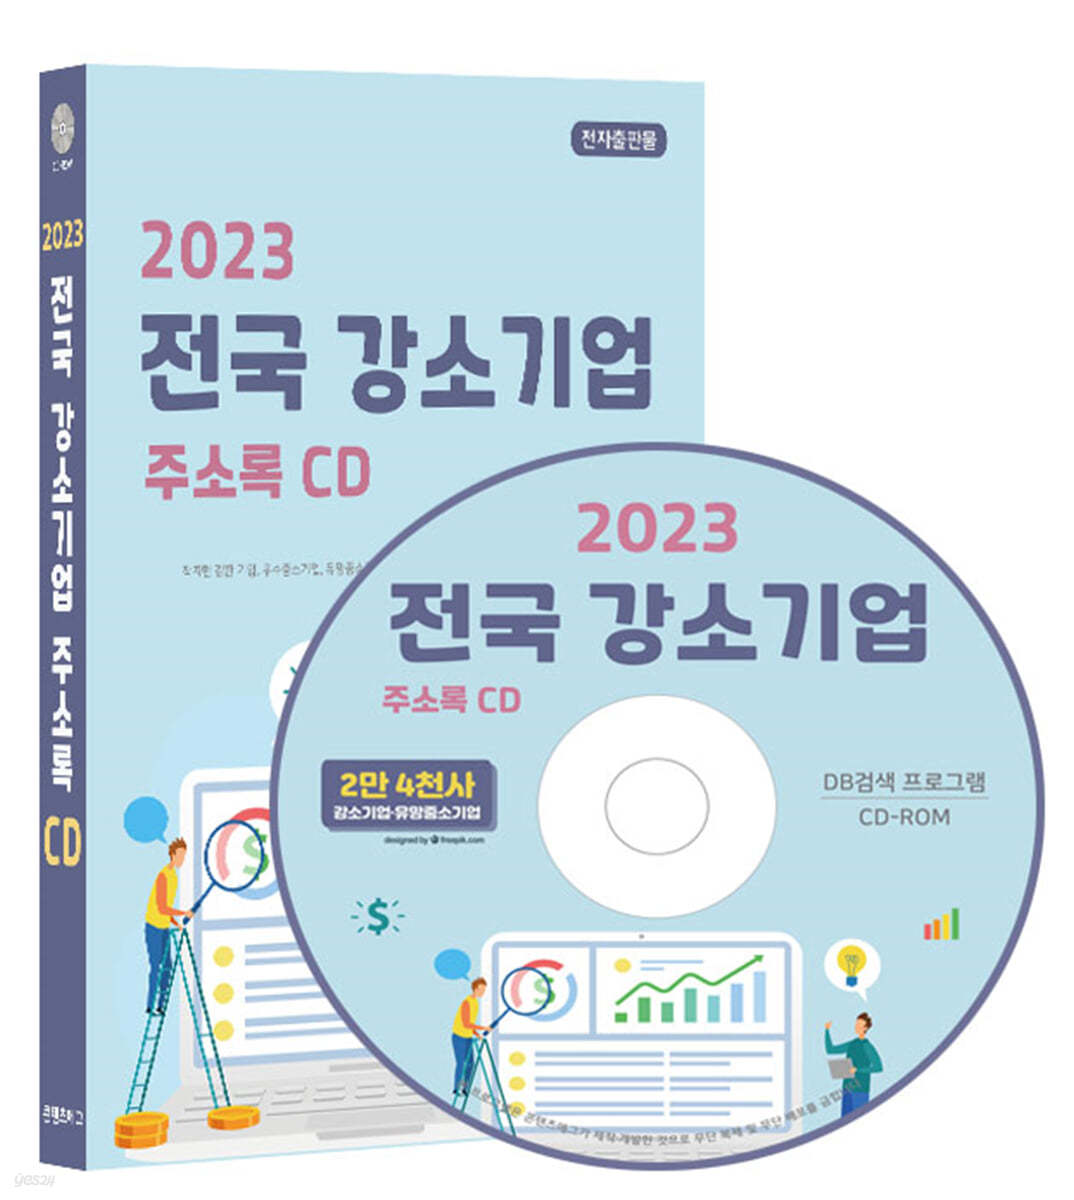 2023 전국 강소기업 주소록 CD